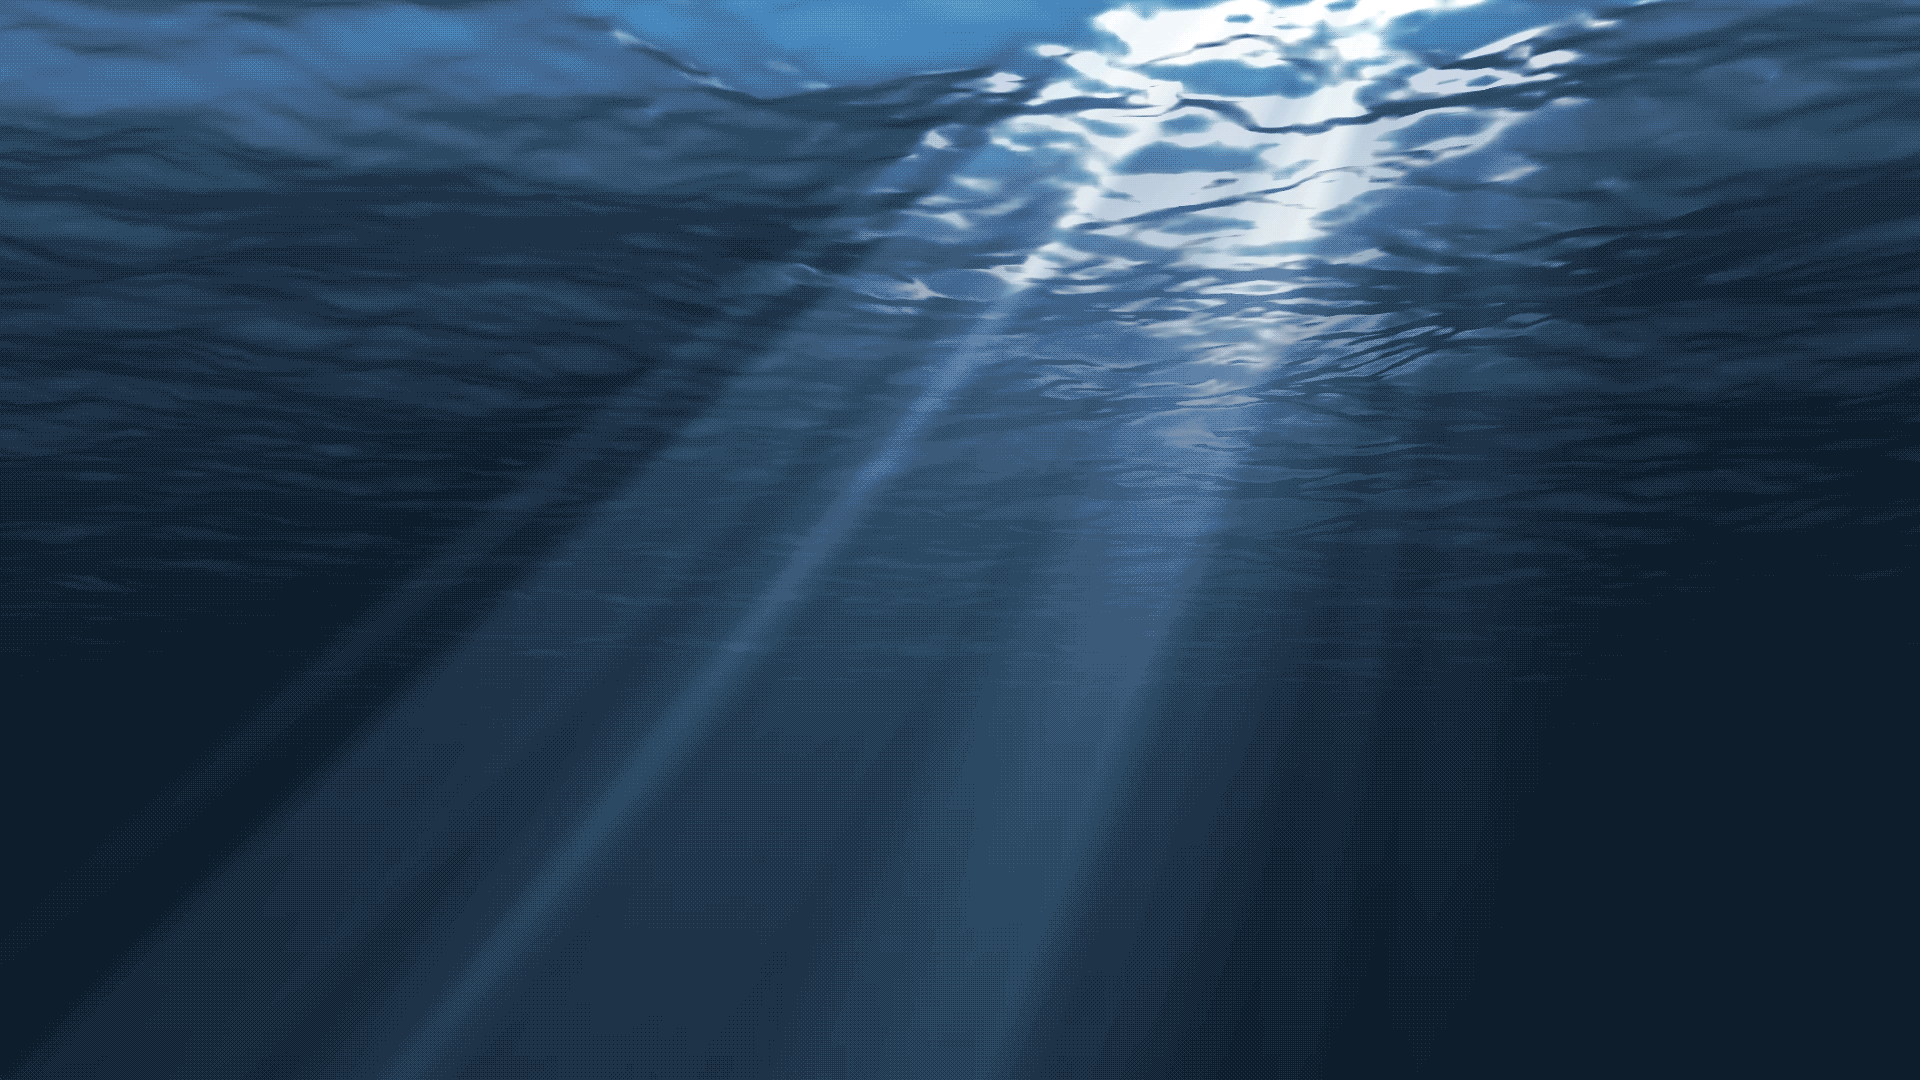 Дно океана. Океан под водой. Движущаяся вода. Вода анимация. Вокруг плавно